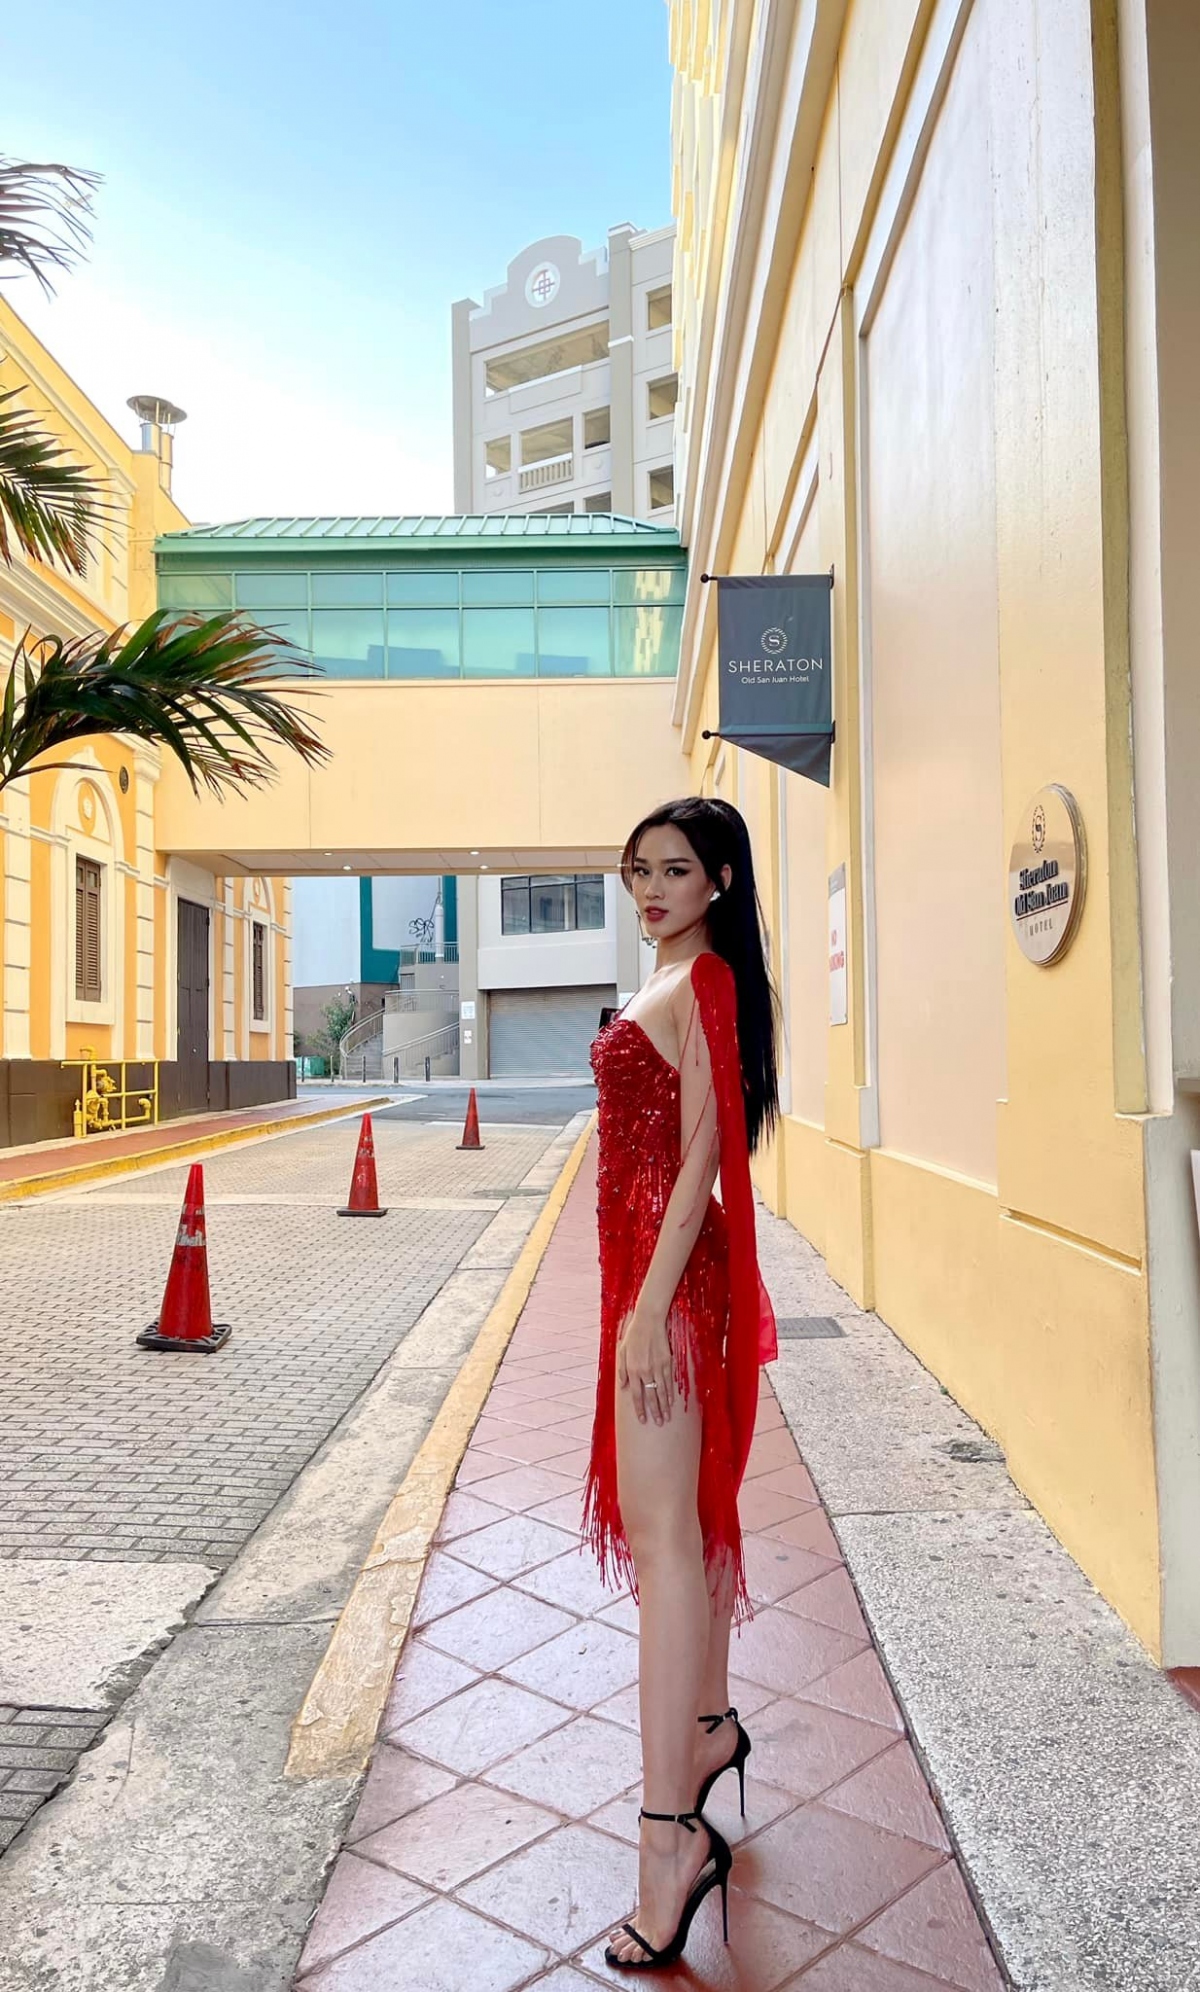 Hoa hậu Đỗ Thị Hà khoe nhan sắc đỉnh cao với đầm đỏ nổi bật